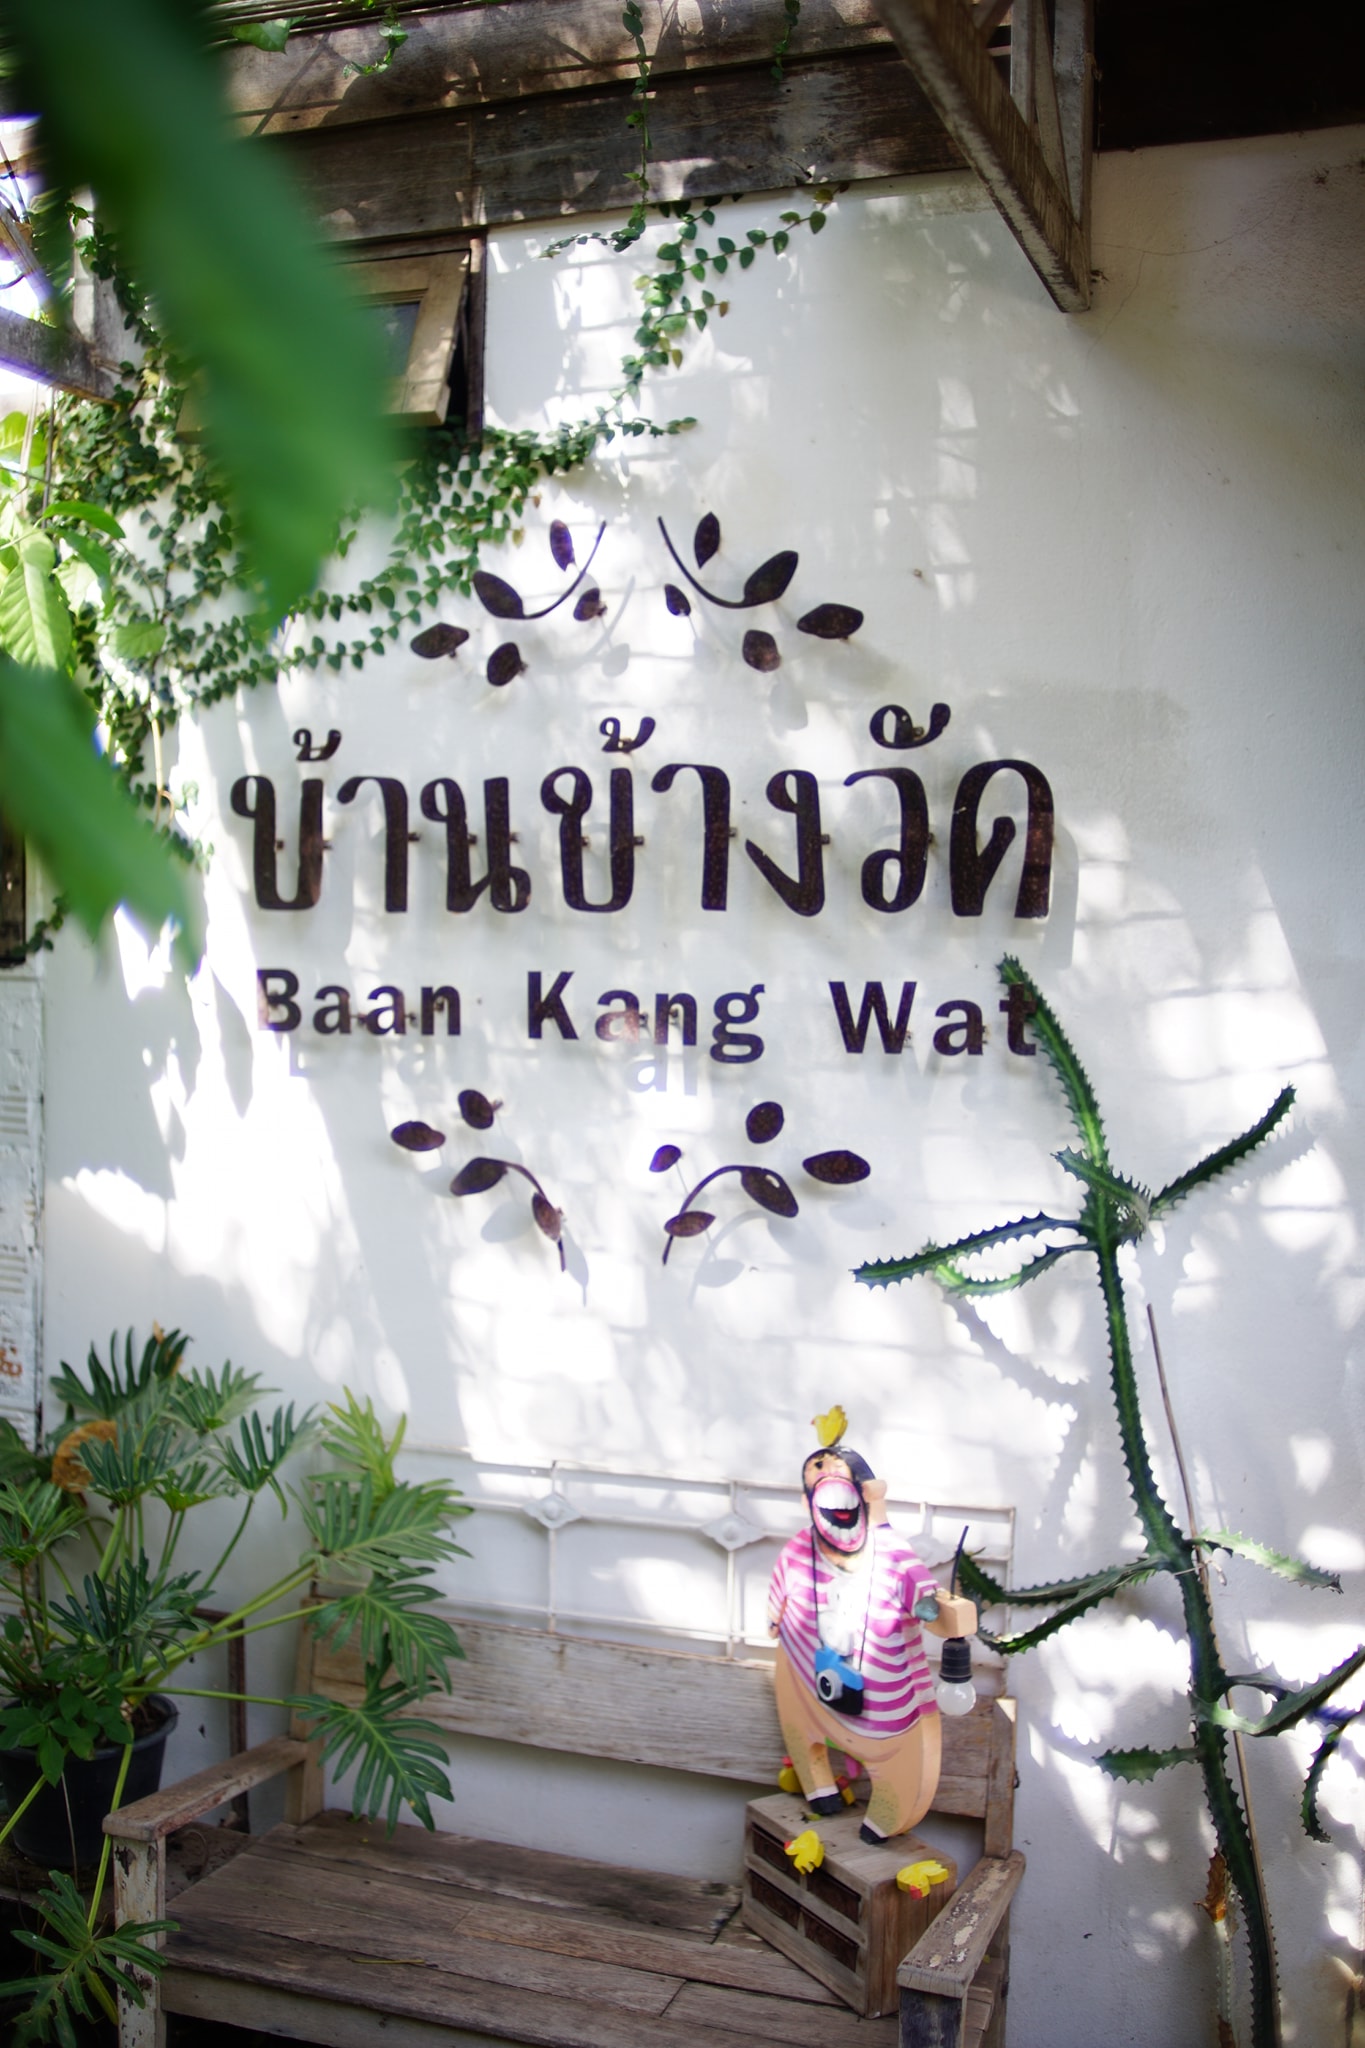 MUST JOIN: Baan Kang Wat